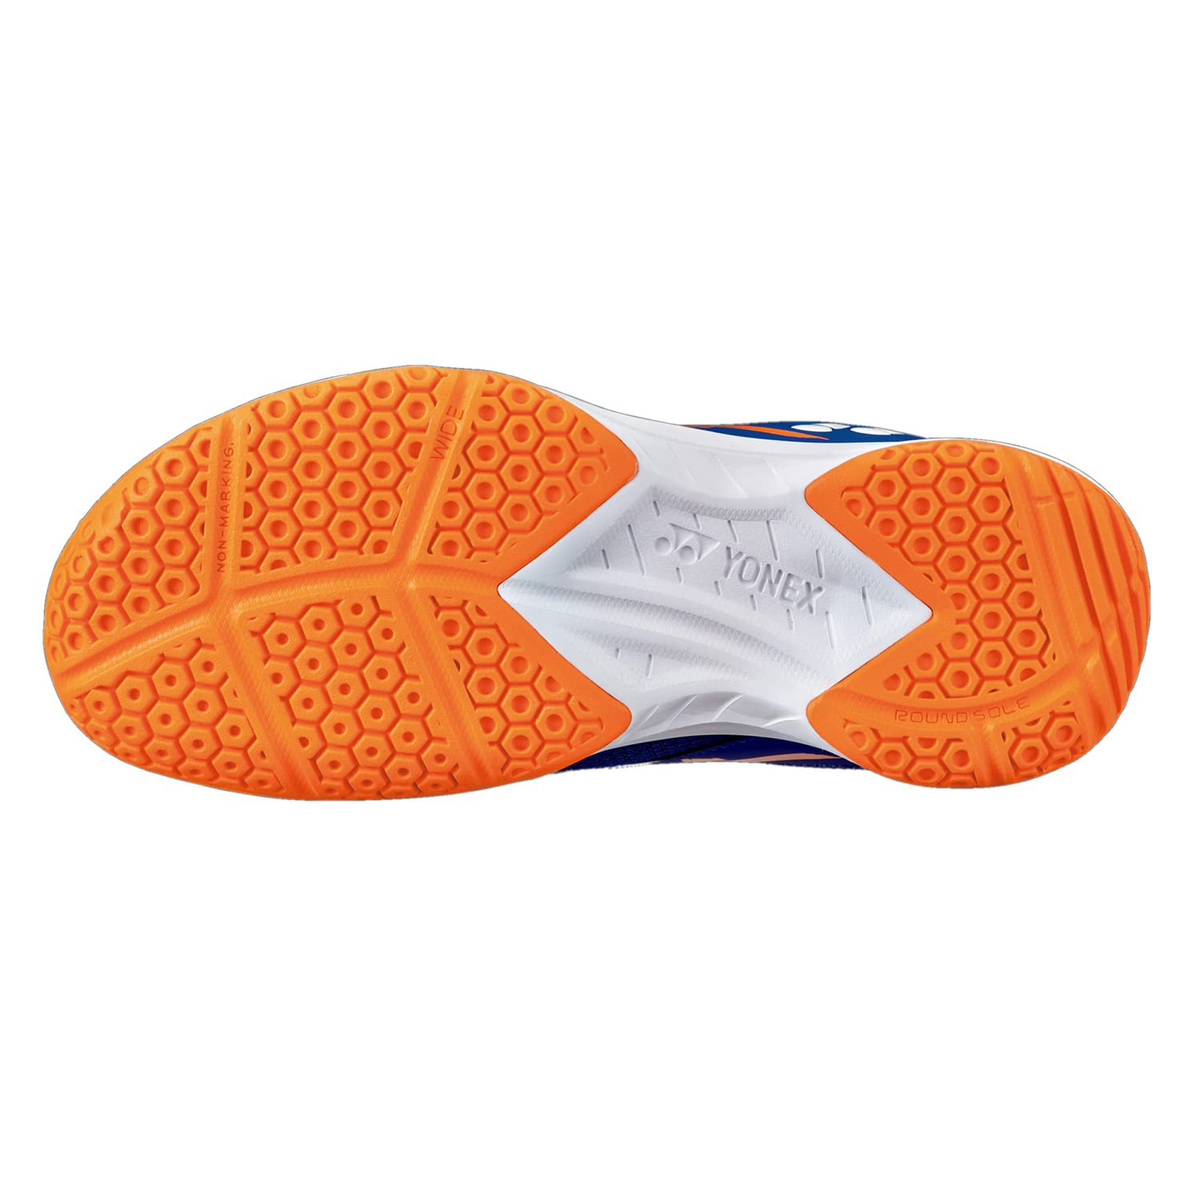 يونيكس حذاء تنس الريشة للرجال، SHB39WEX، أزرق/برتقالي، 41